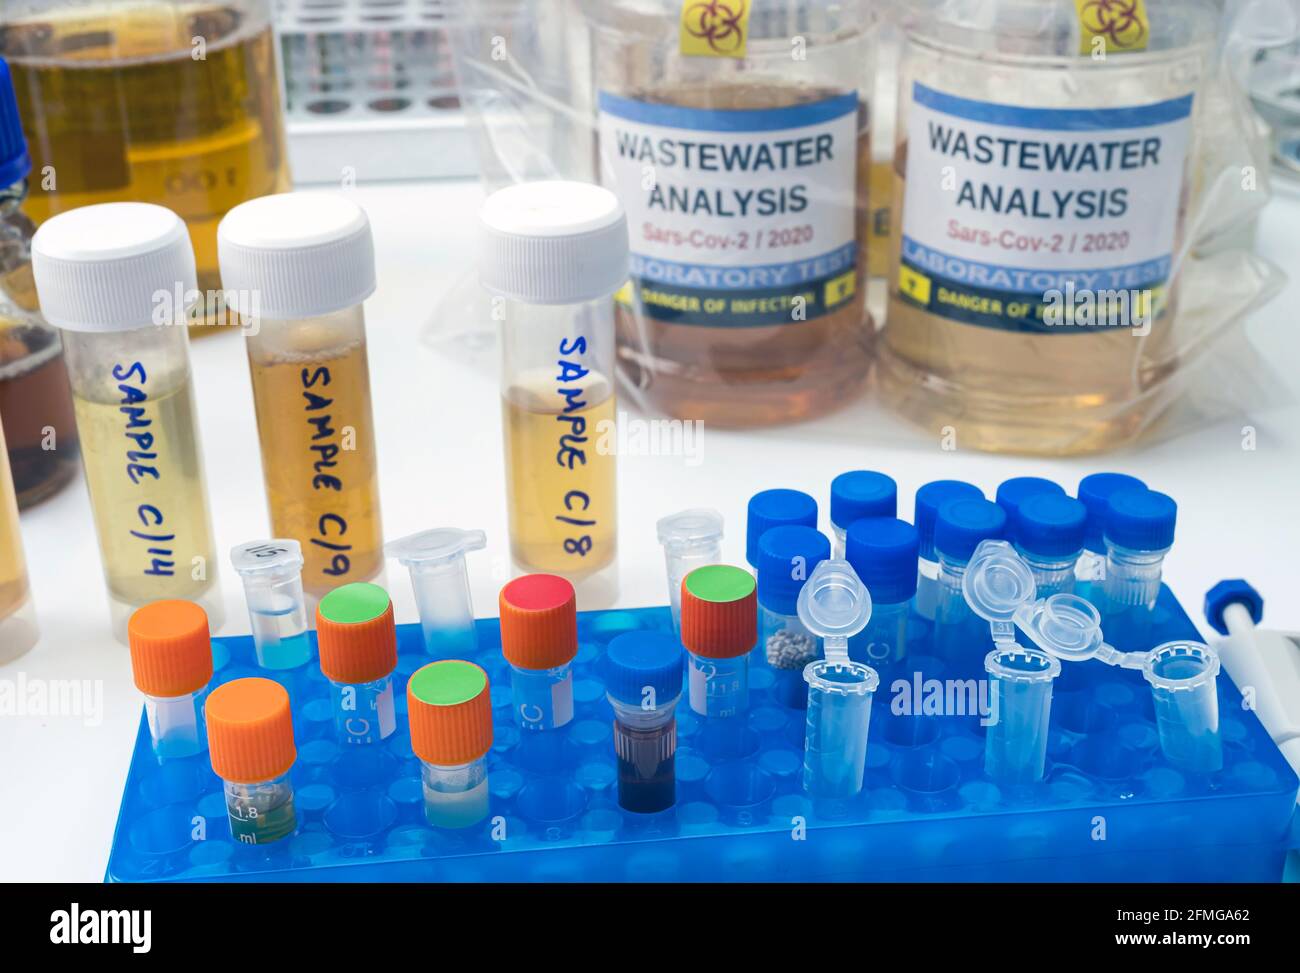 Analisi del virus sars-COV-2 nell'uomo in un laboratorio di acque reflue, immagine concettuale Foto Stock